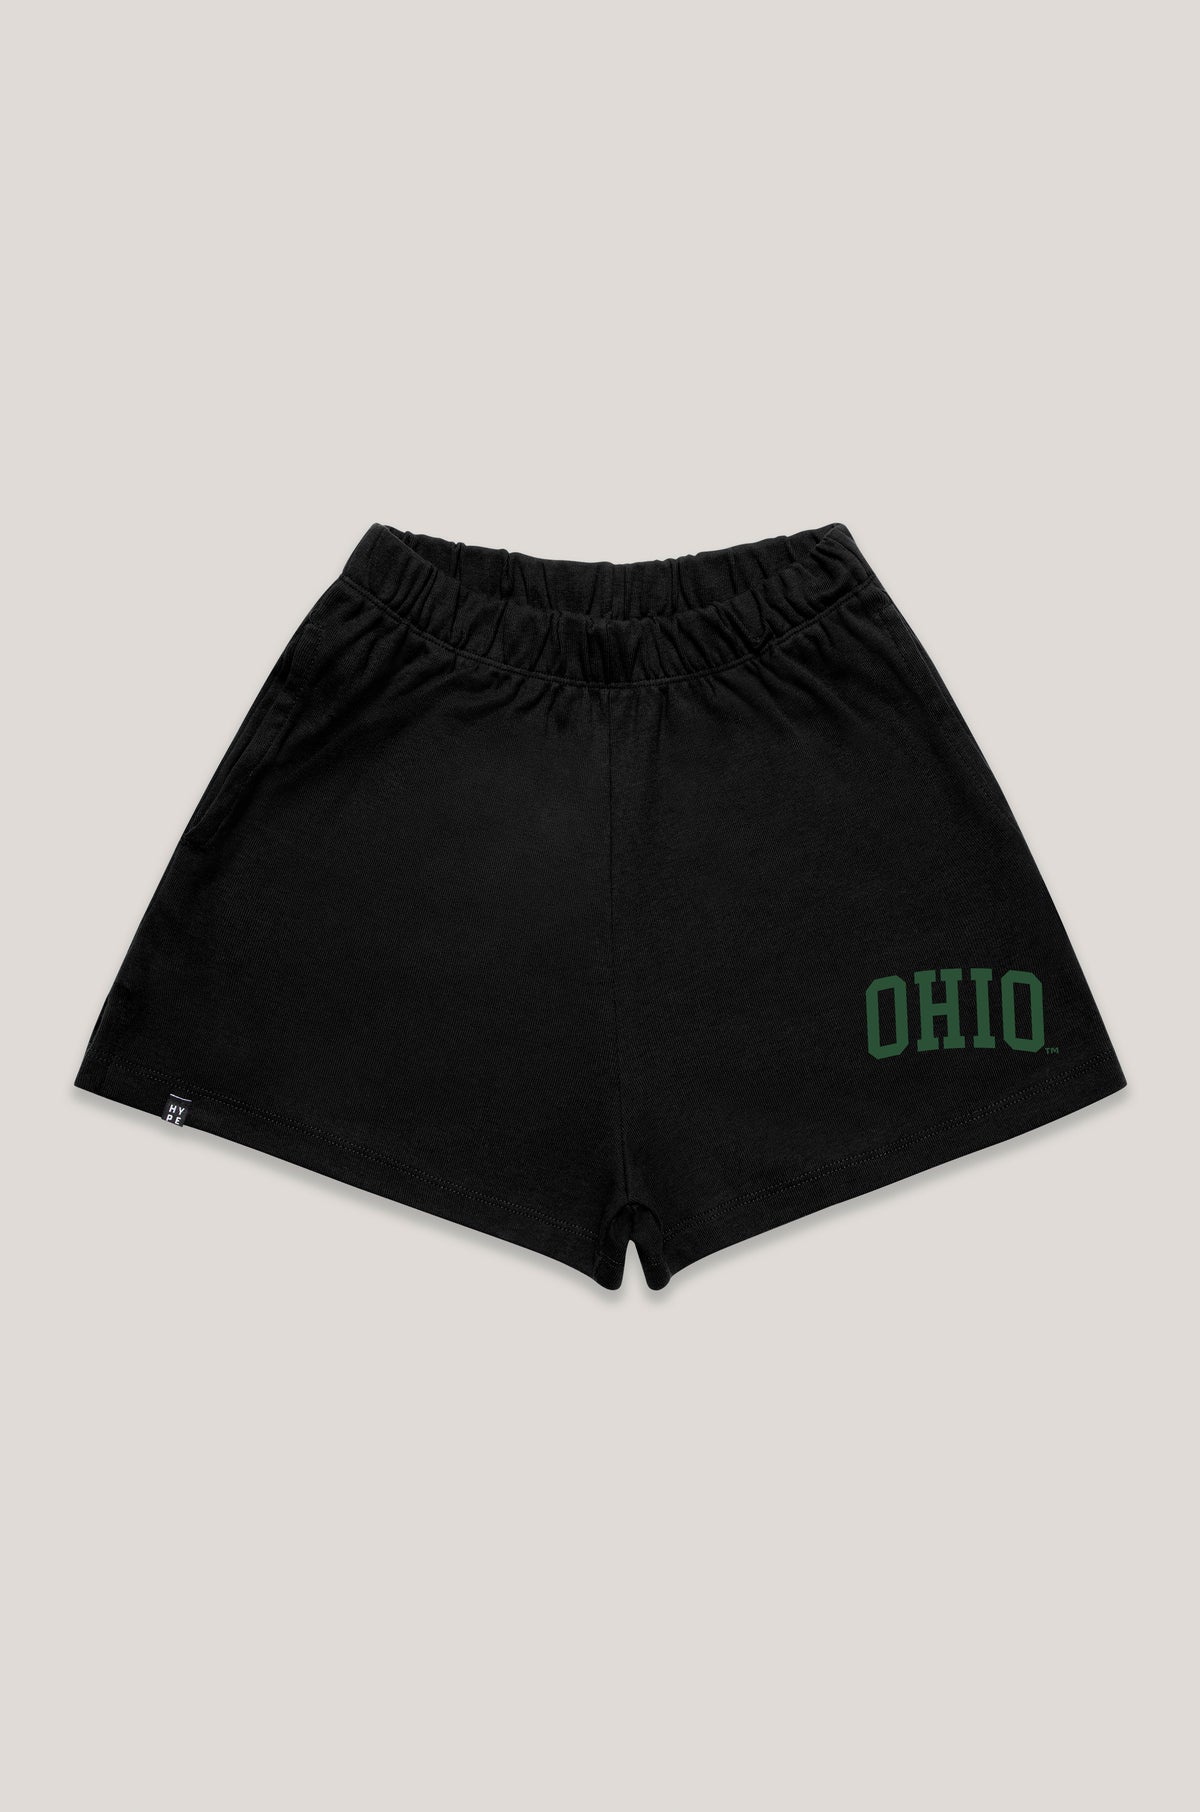 Ohio University Track Shorts